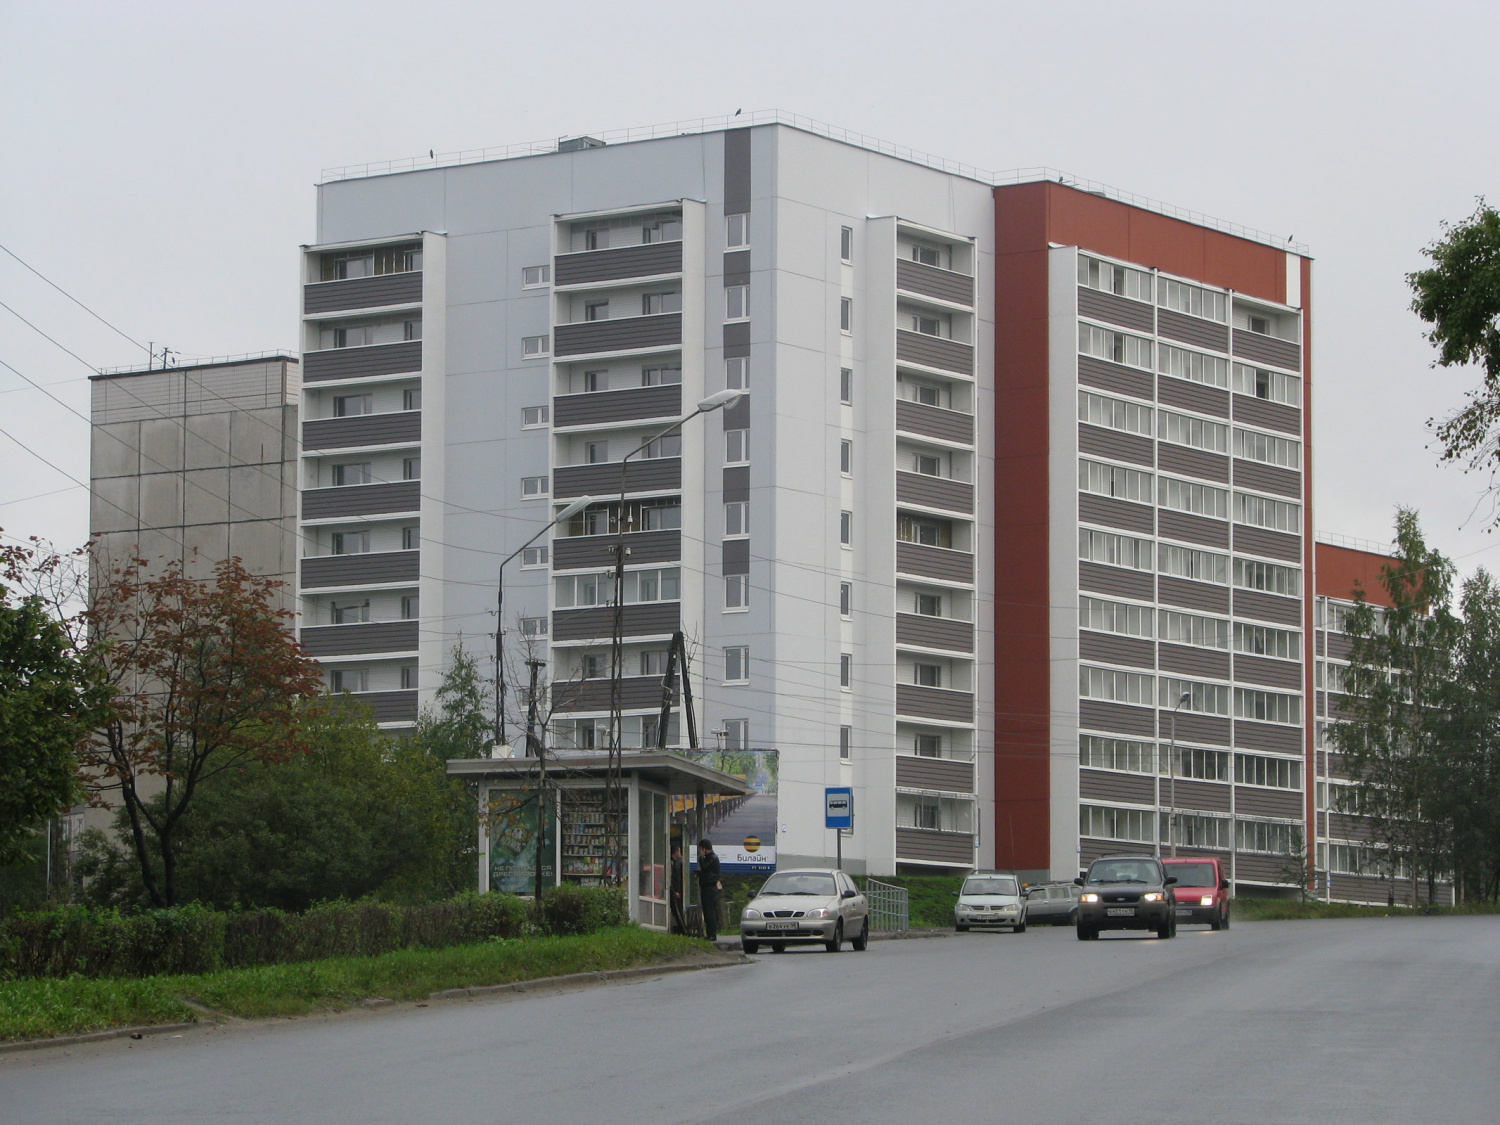 Многоквартирный жилой дом по ул. Гвардейская в г.Петрозаводске отгружен